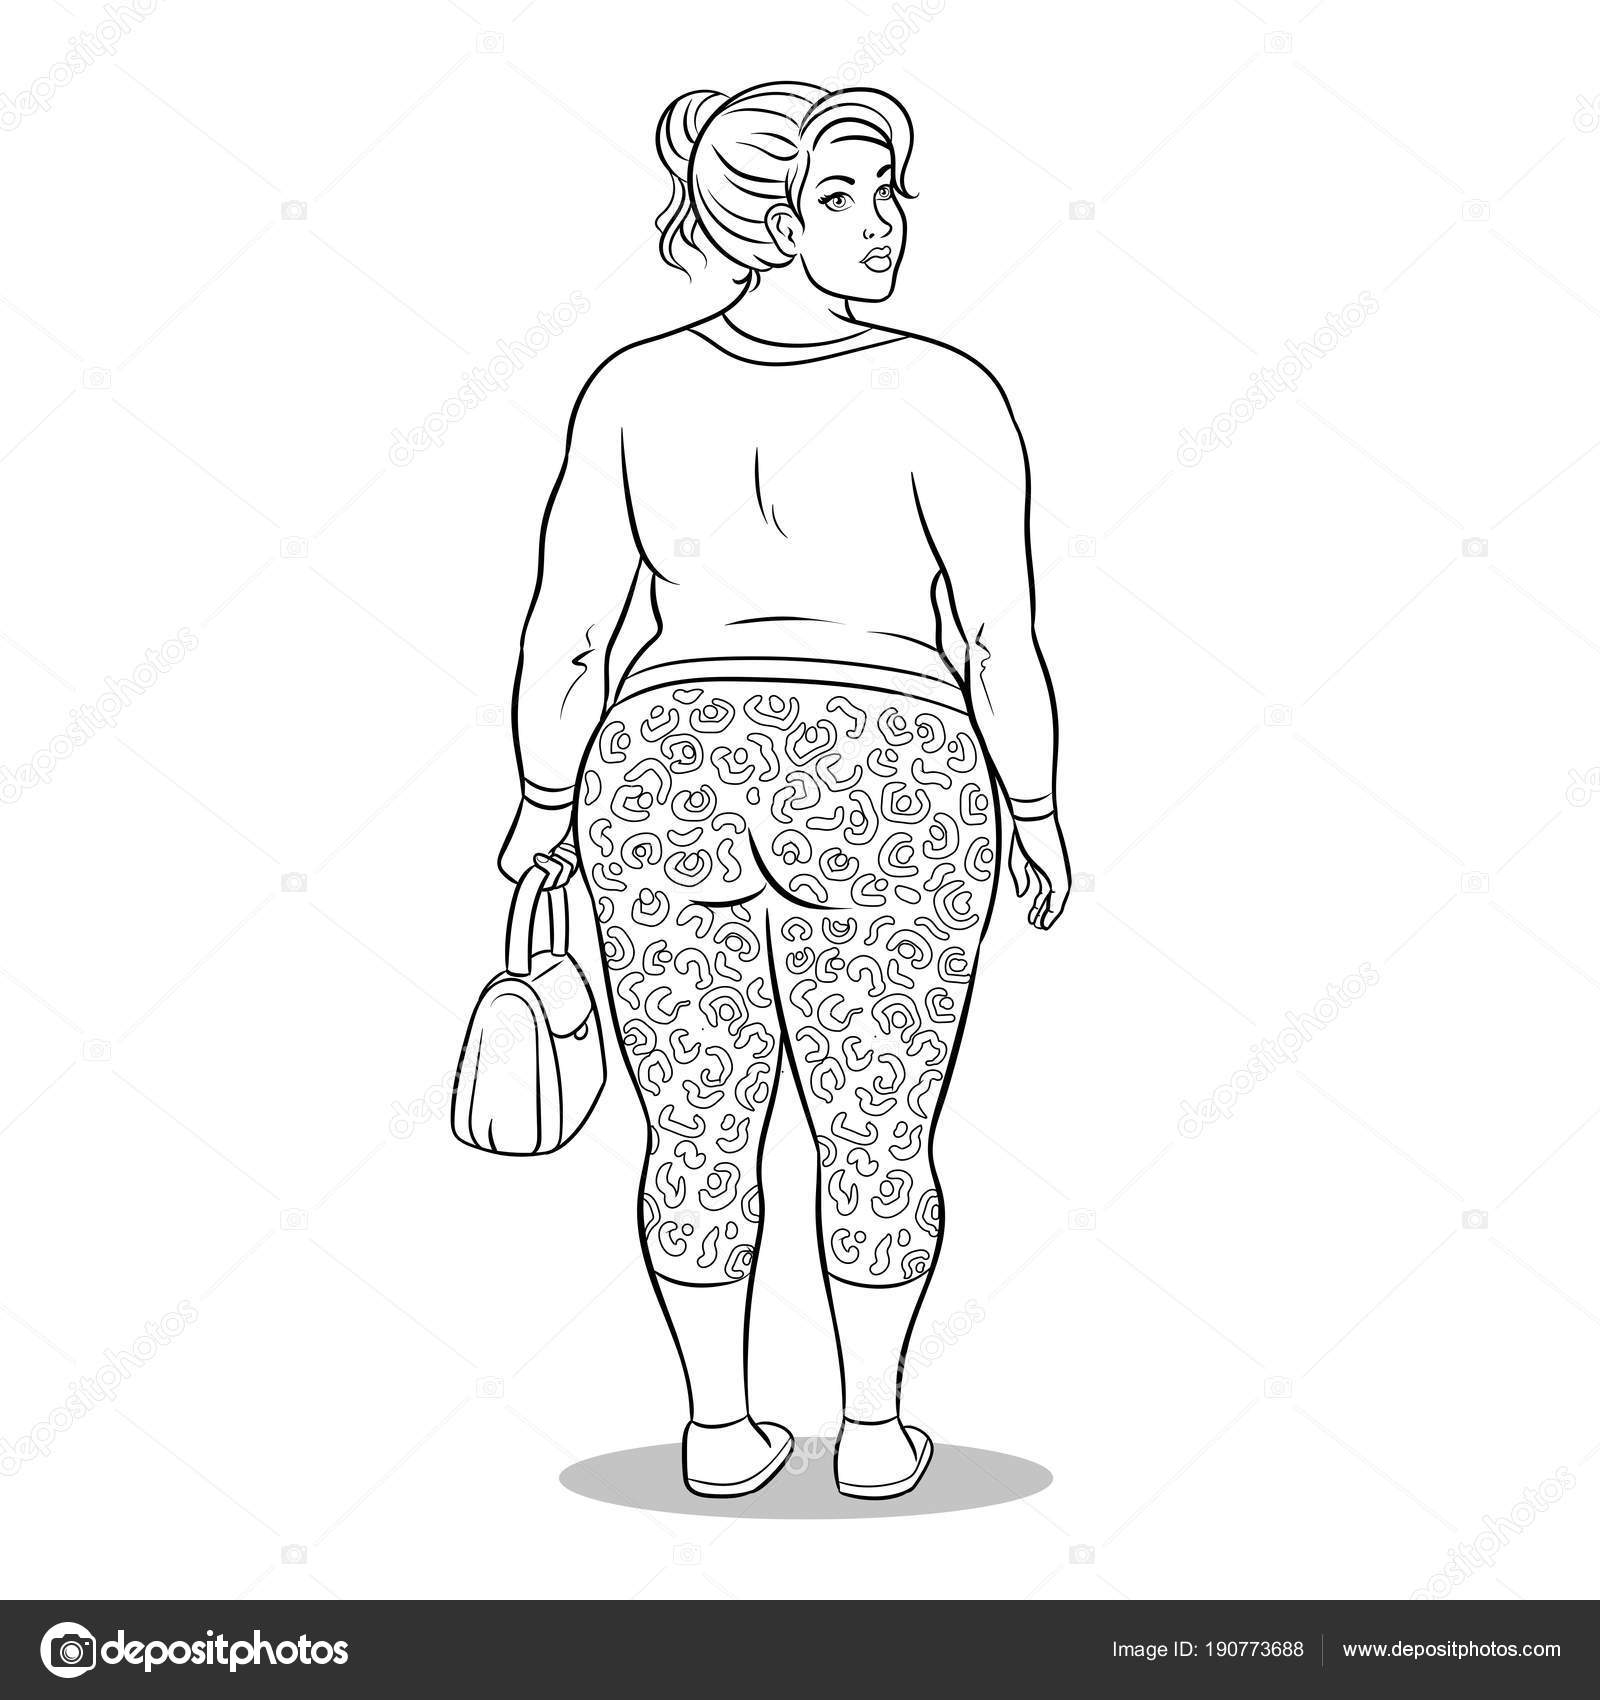 https://st3.depositphotos.com/5891300/19077/v/1600/depositphotos_190773688-stock-illustration-fat-girl-in-leopard-leggings.jpg